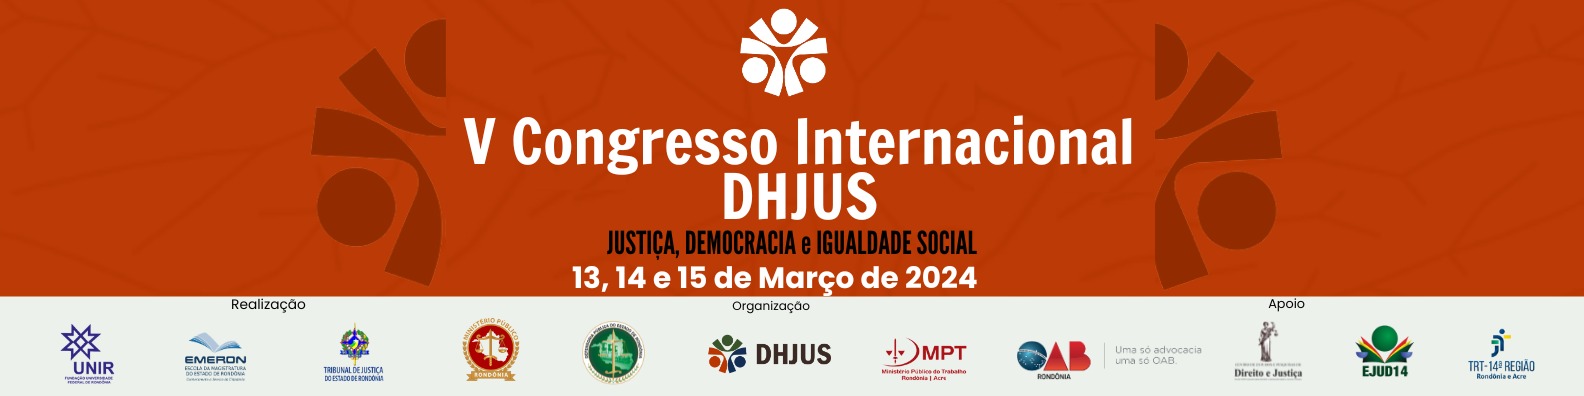 Arte do Congresso Internacional DHJUS - Justiça, Democracia e Igualdade Social